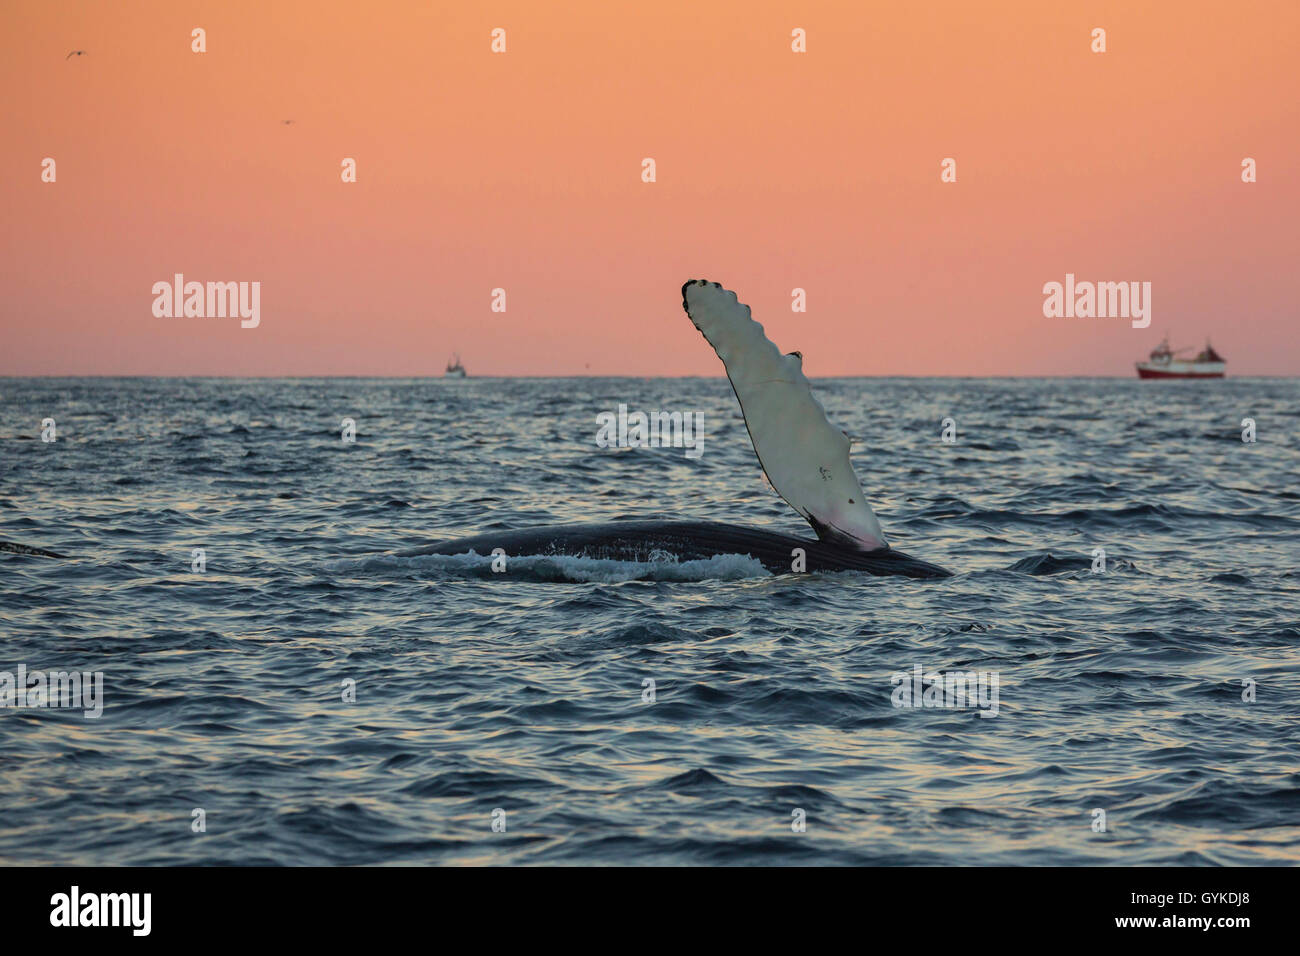 Humpback Whale (Megaptera novaeangliae), presentando in atmosfera mattutina nella parte anteriore del cielo arancione una pinna bianca, Norvegia, Troms, Senja Foto Stock